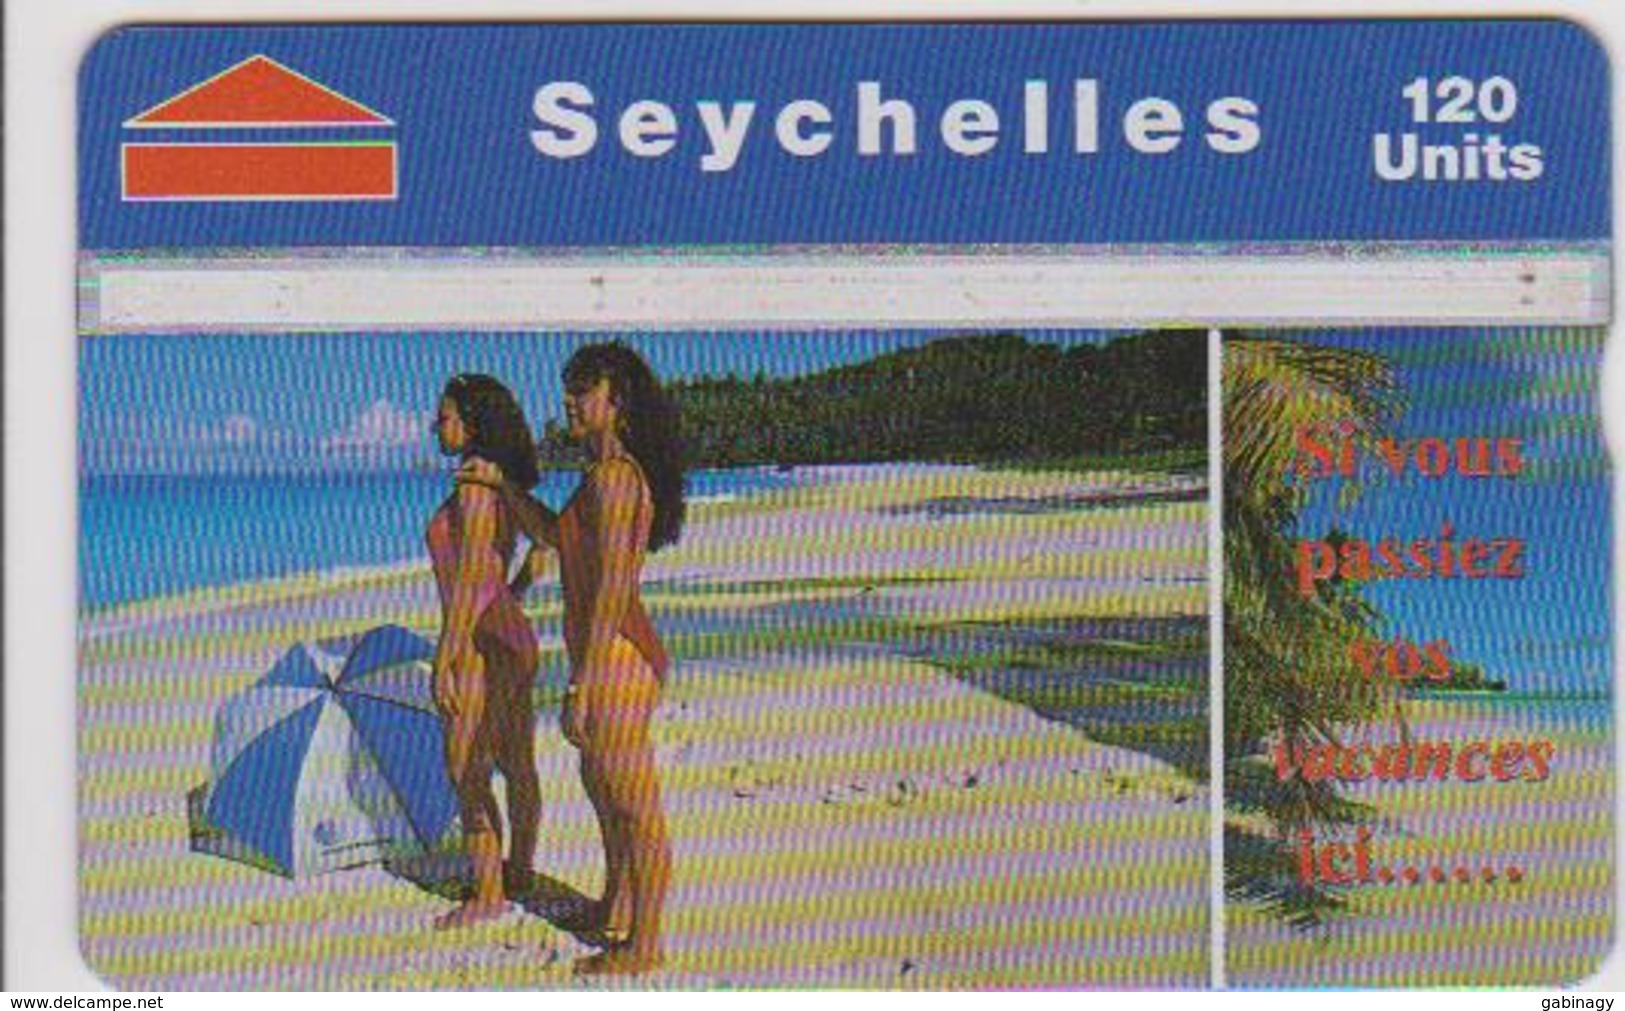 #04 - SEYCHELLES-02 - BEACH - 120 UNITS - Seychelles